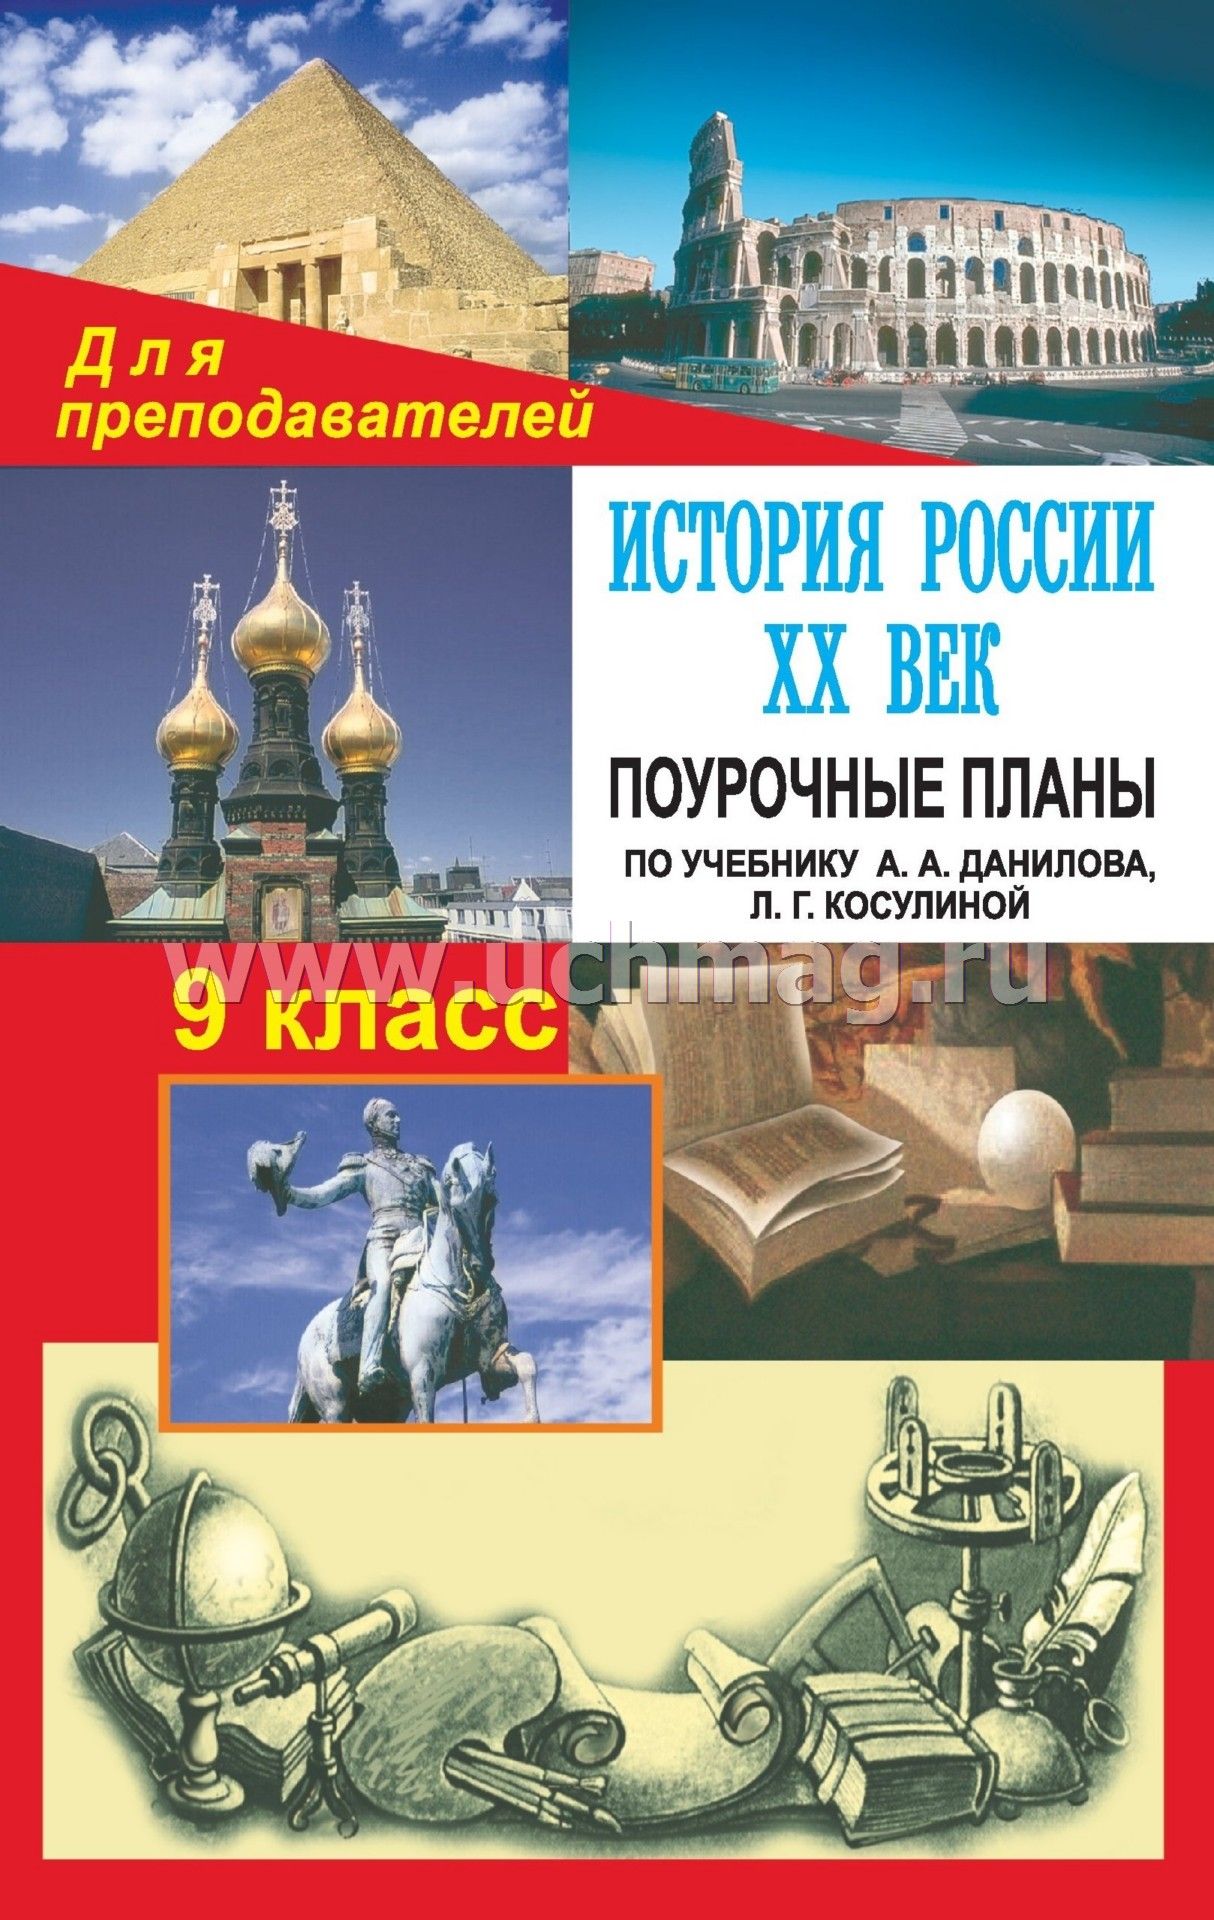 Учебник по истории а.а данилов и л.г косулина 8 класс читать онлайн